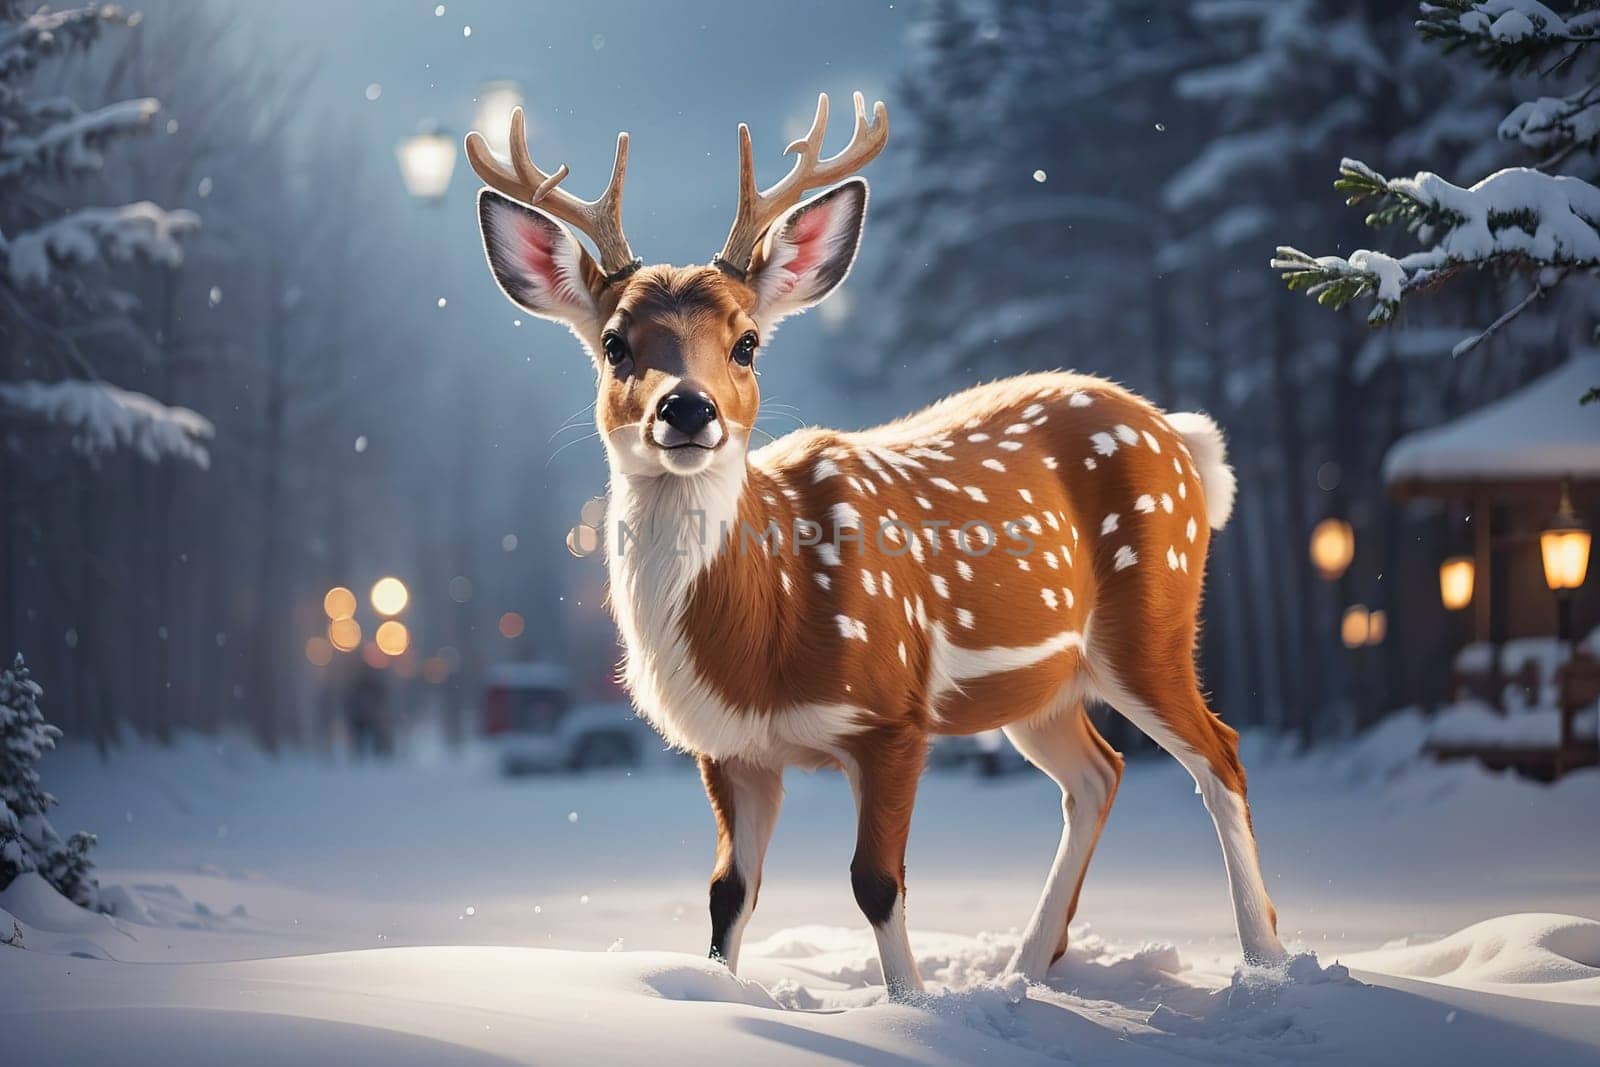 cute cartoon Christmas deer on background.